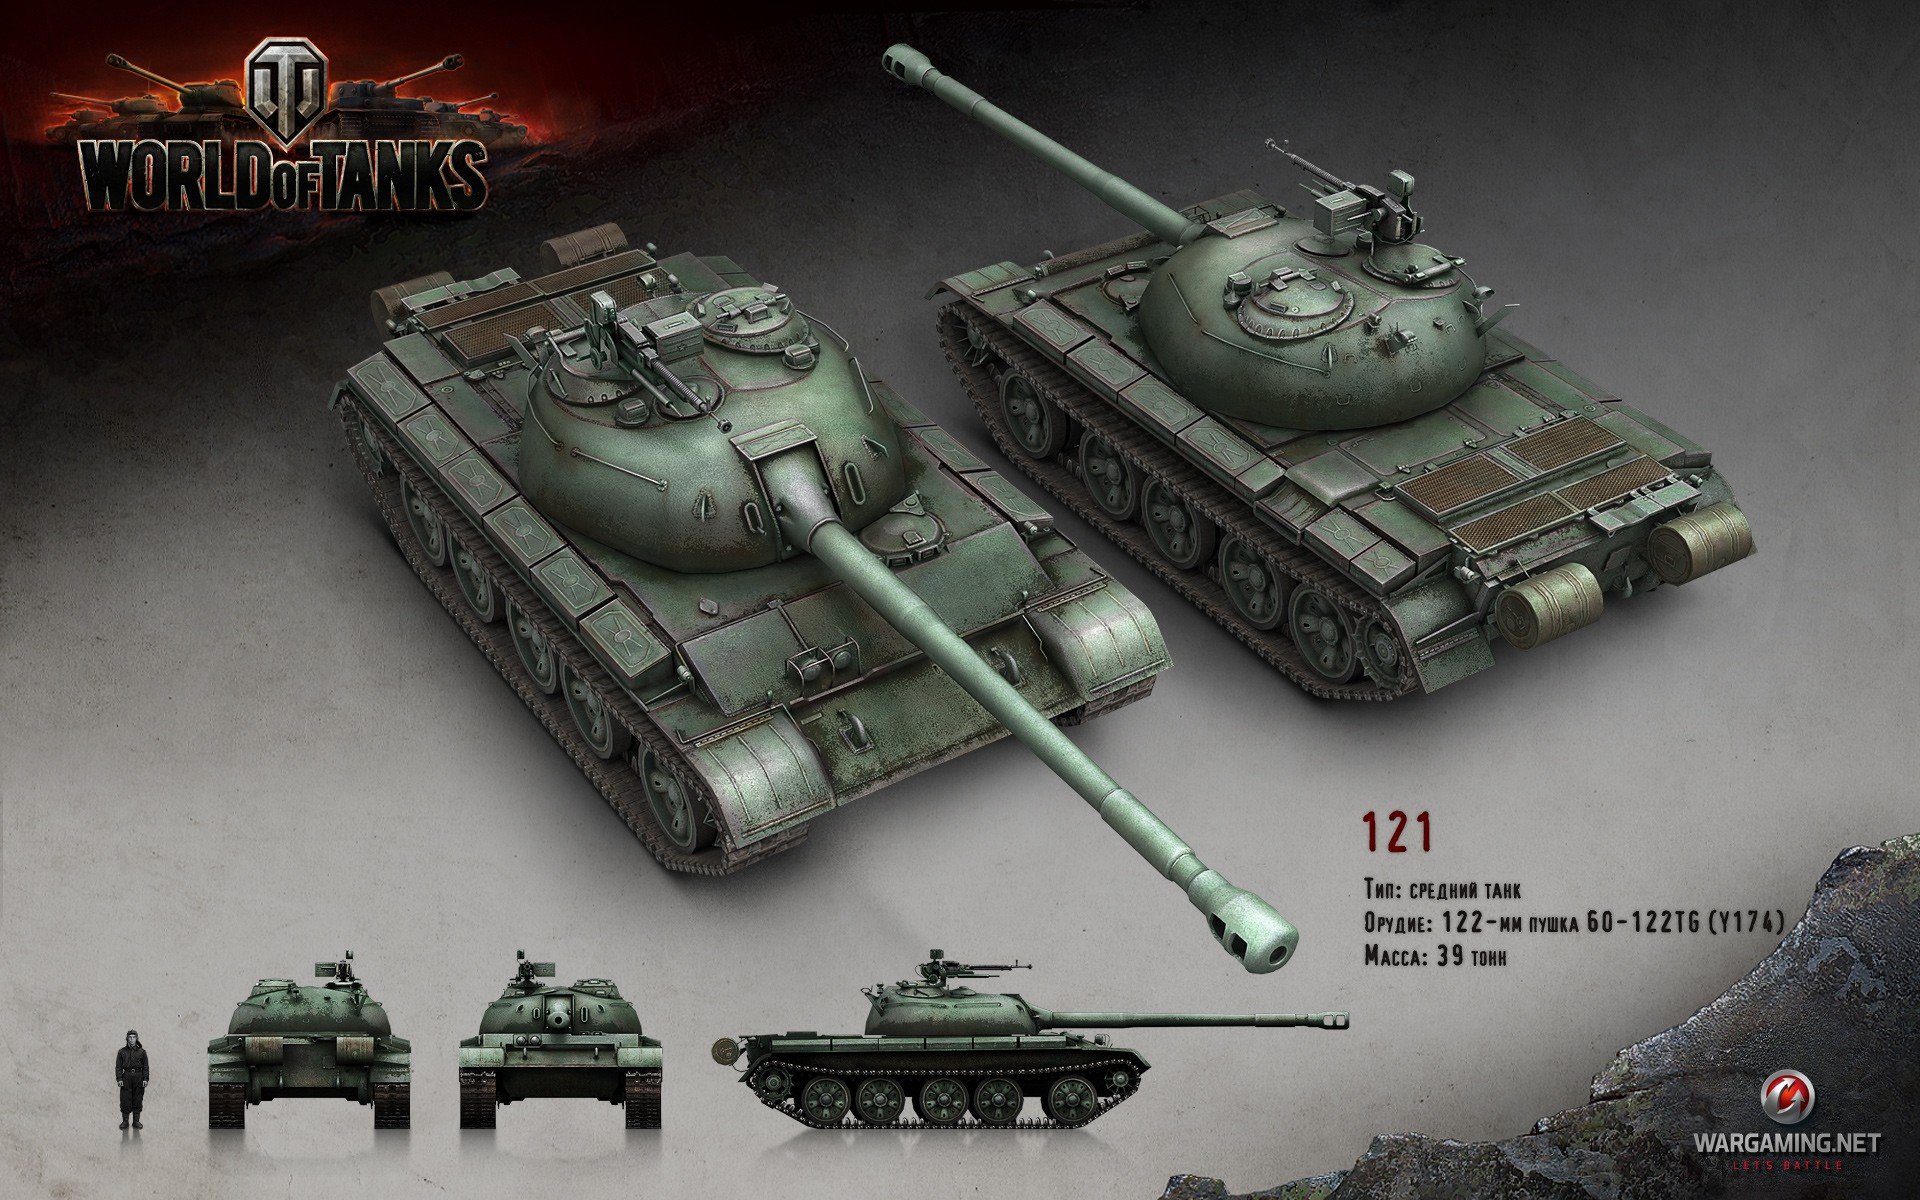 World of Tanks, Tank, Wargaming, 121 Wallpaper